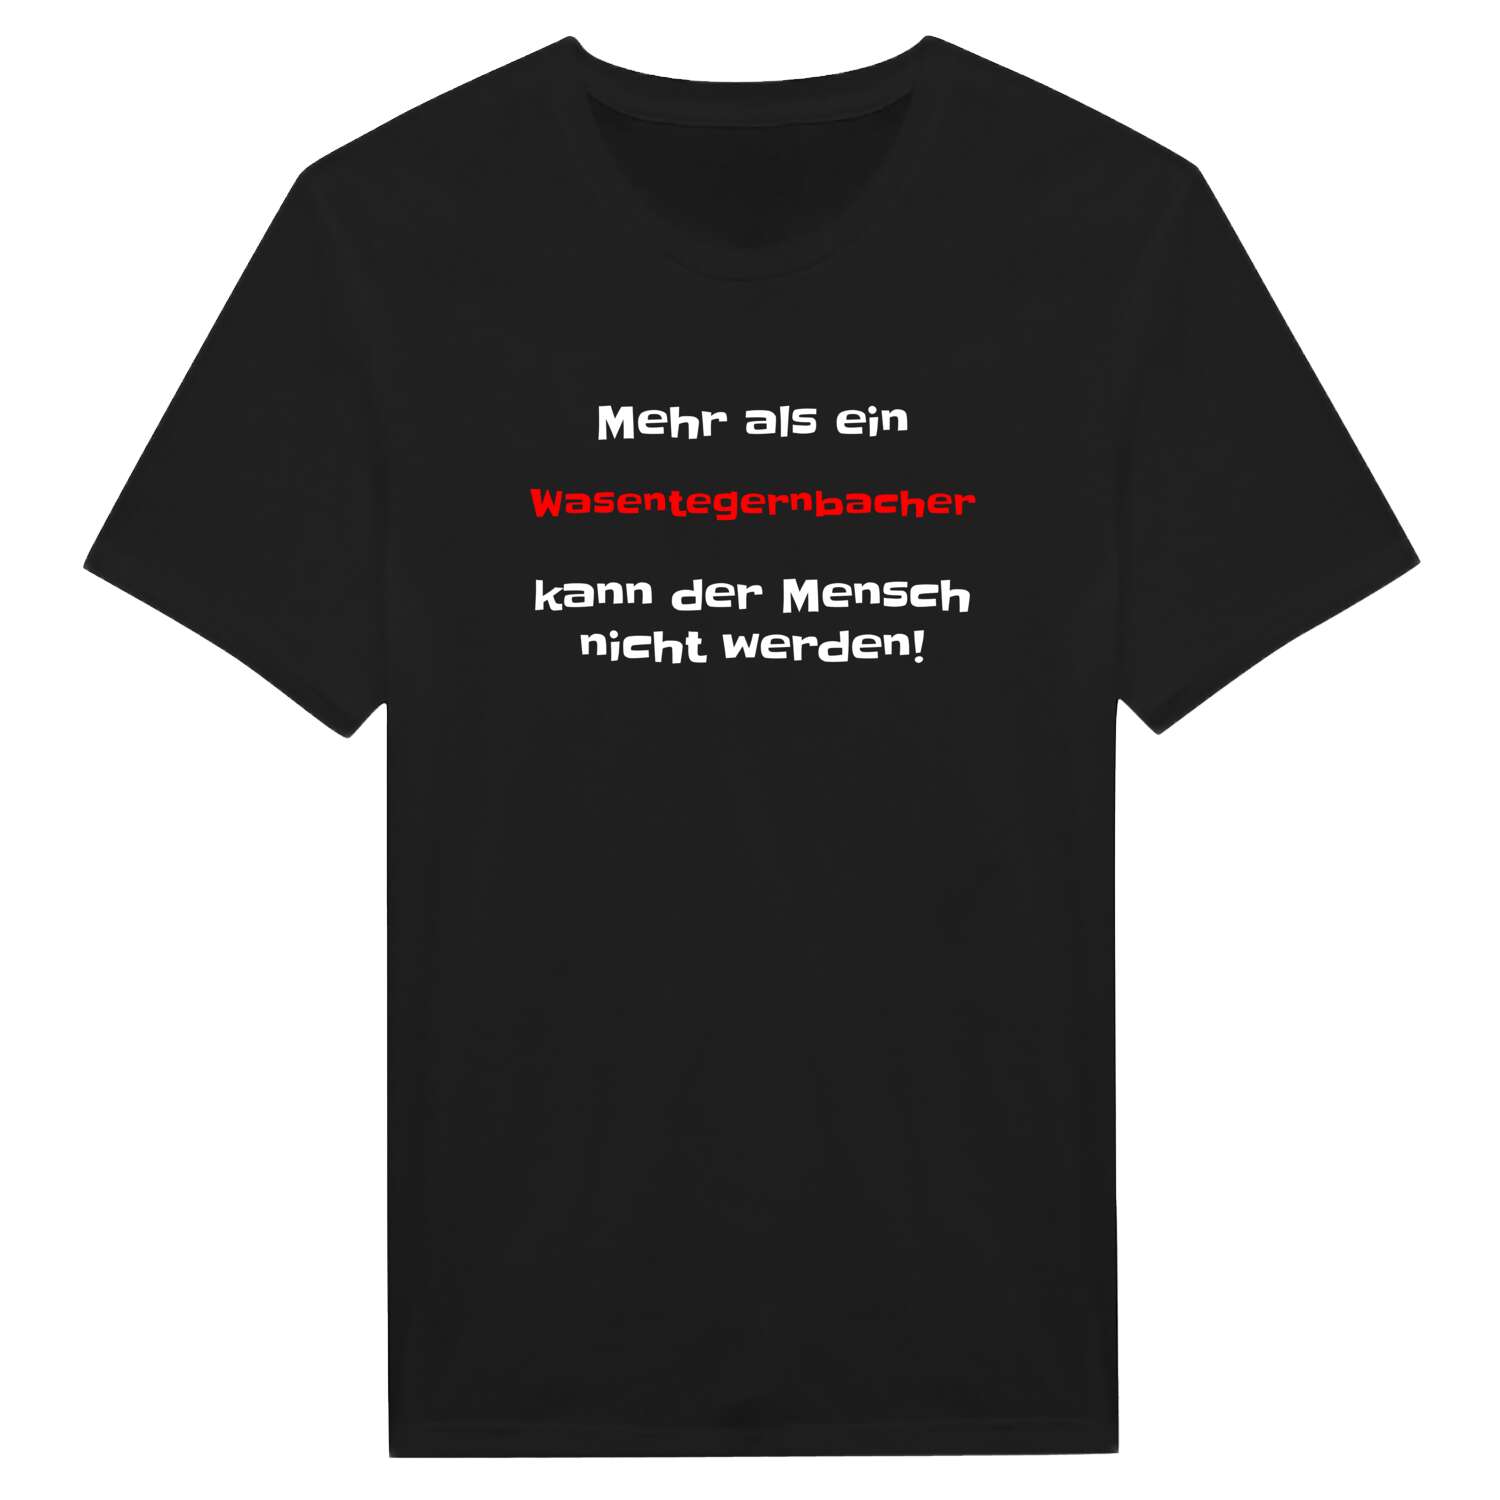 Wasentegernbach T-Shirt »Mehr als ein«